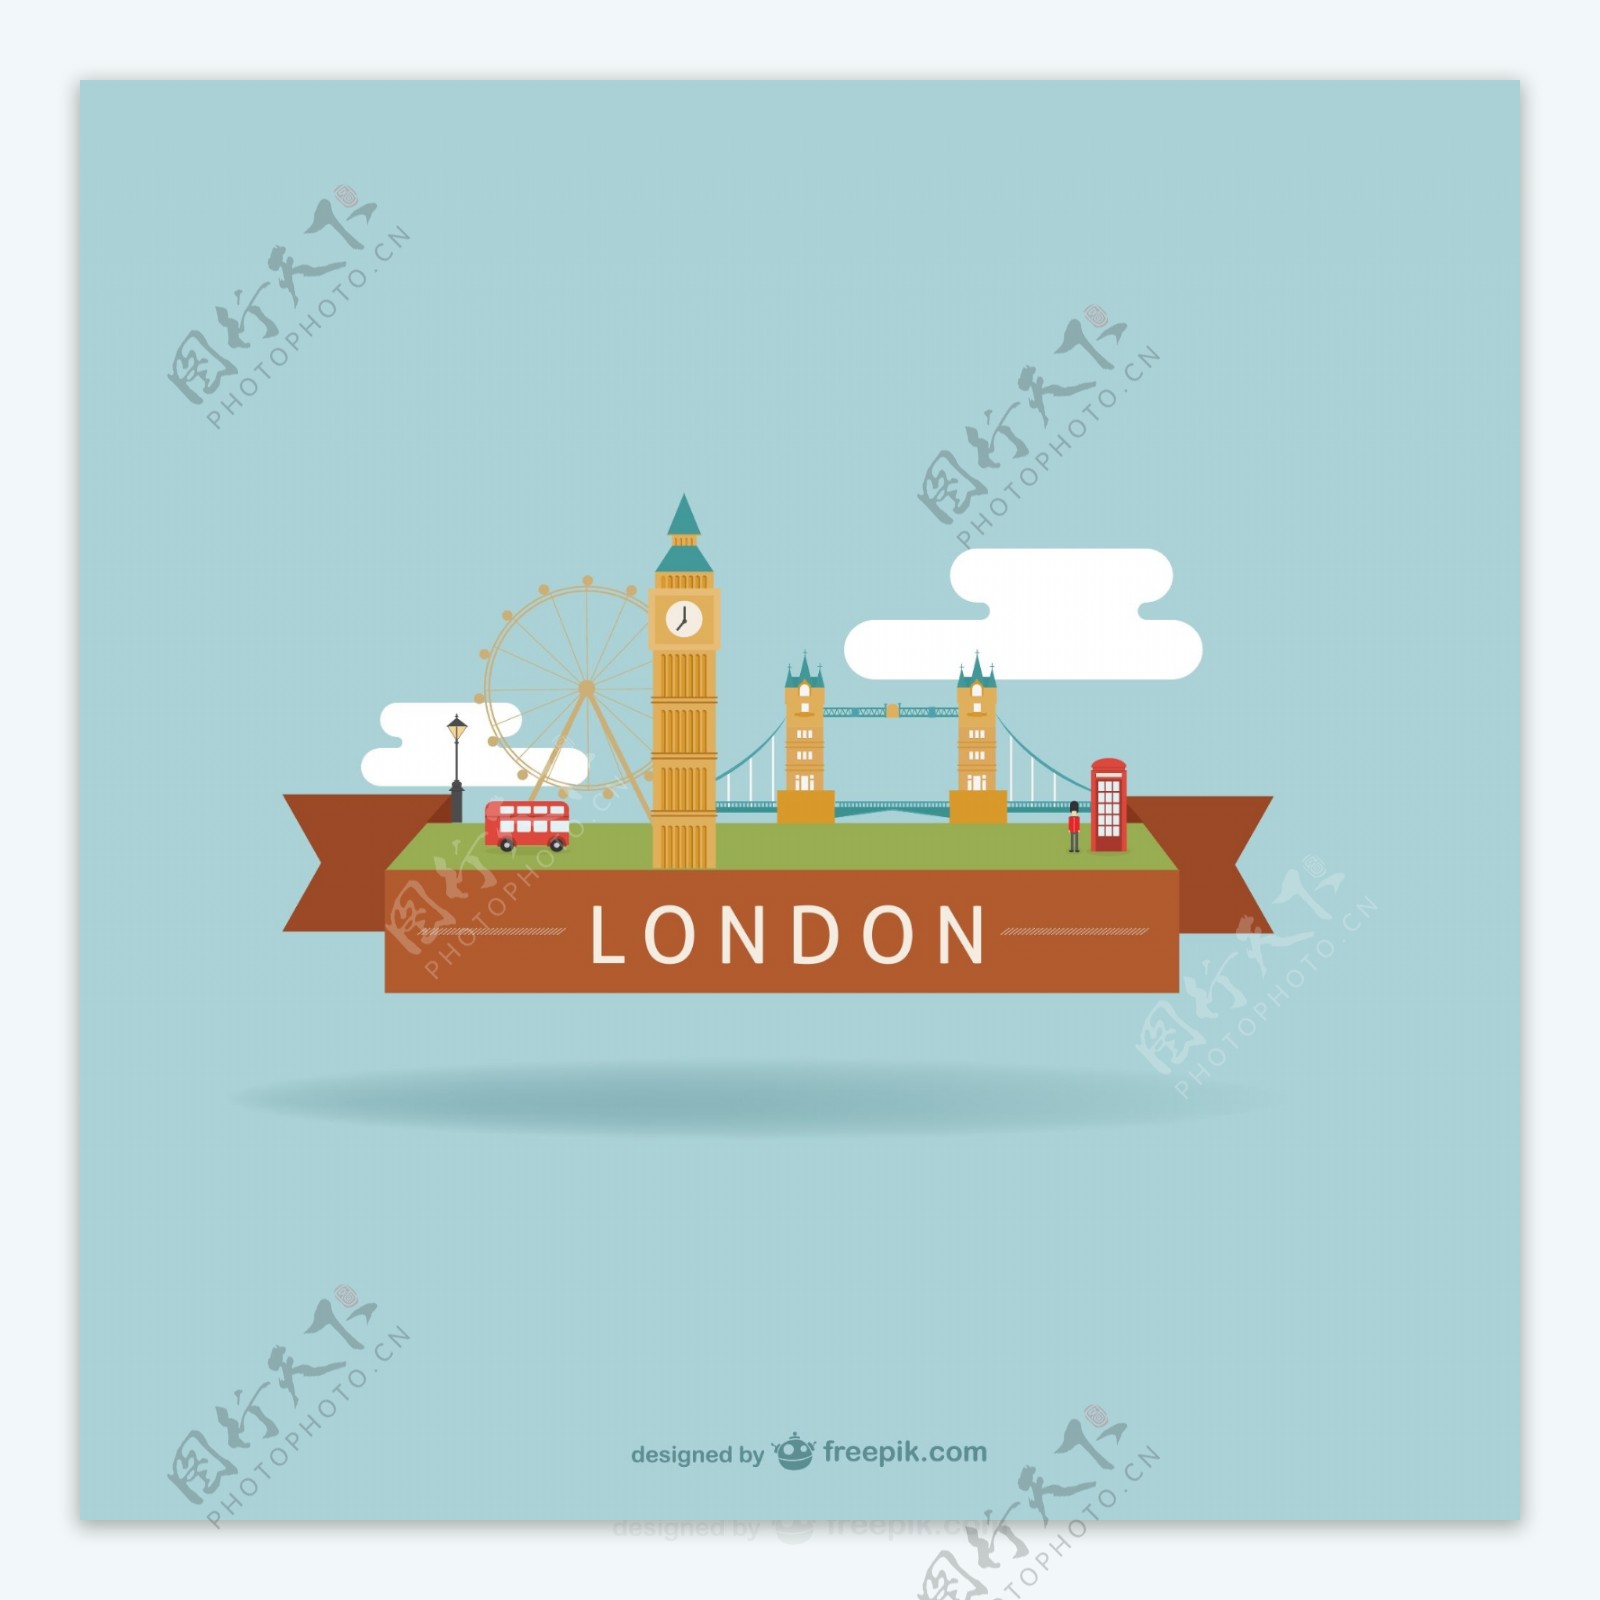 伦敦风情特色标签矢量素材图片